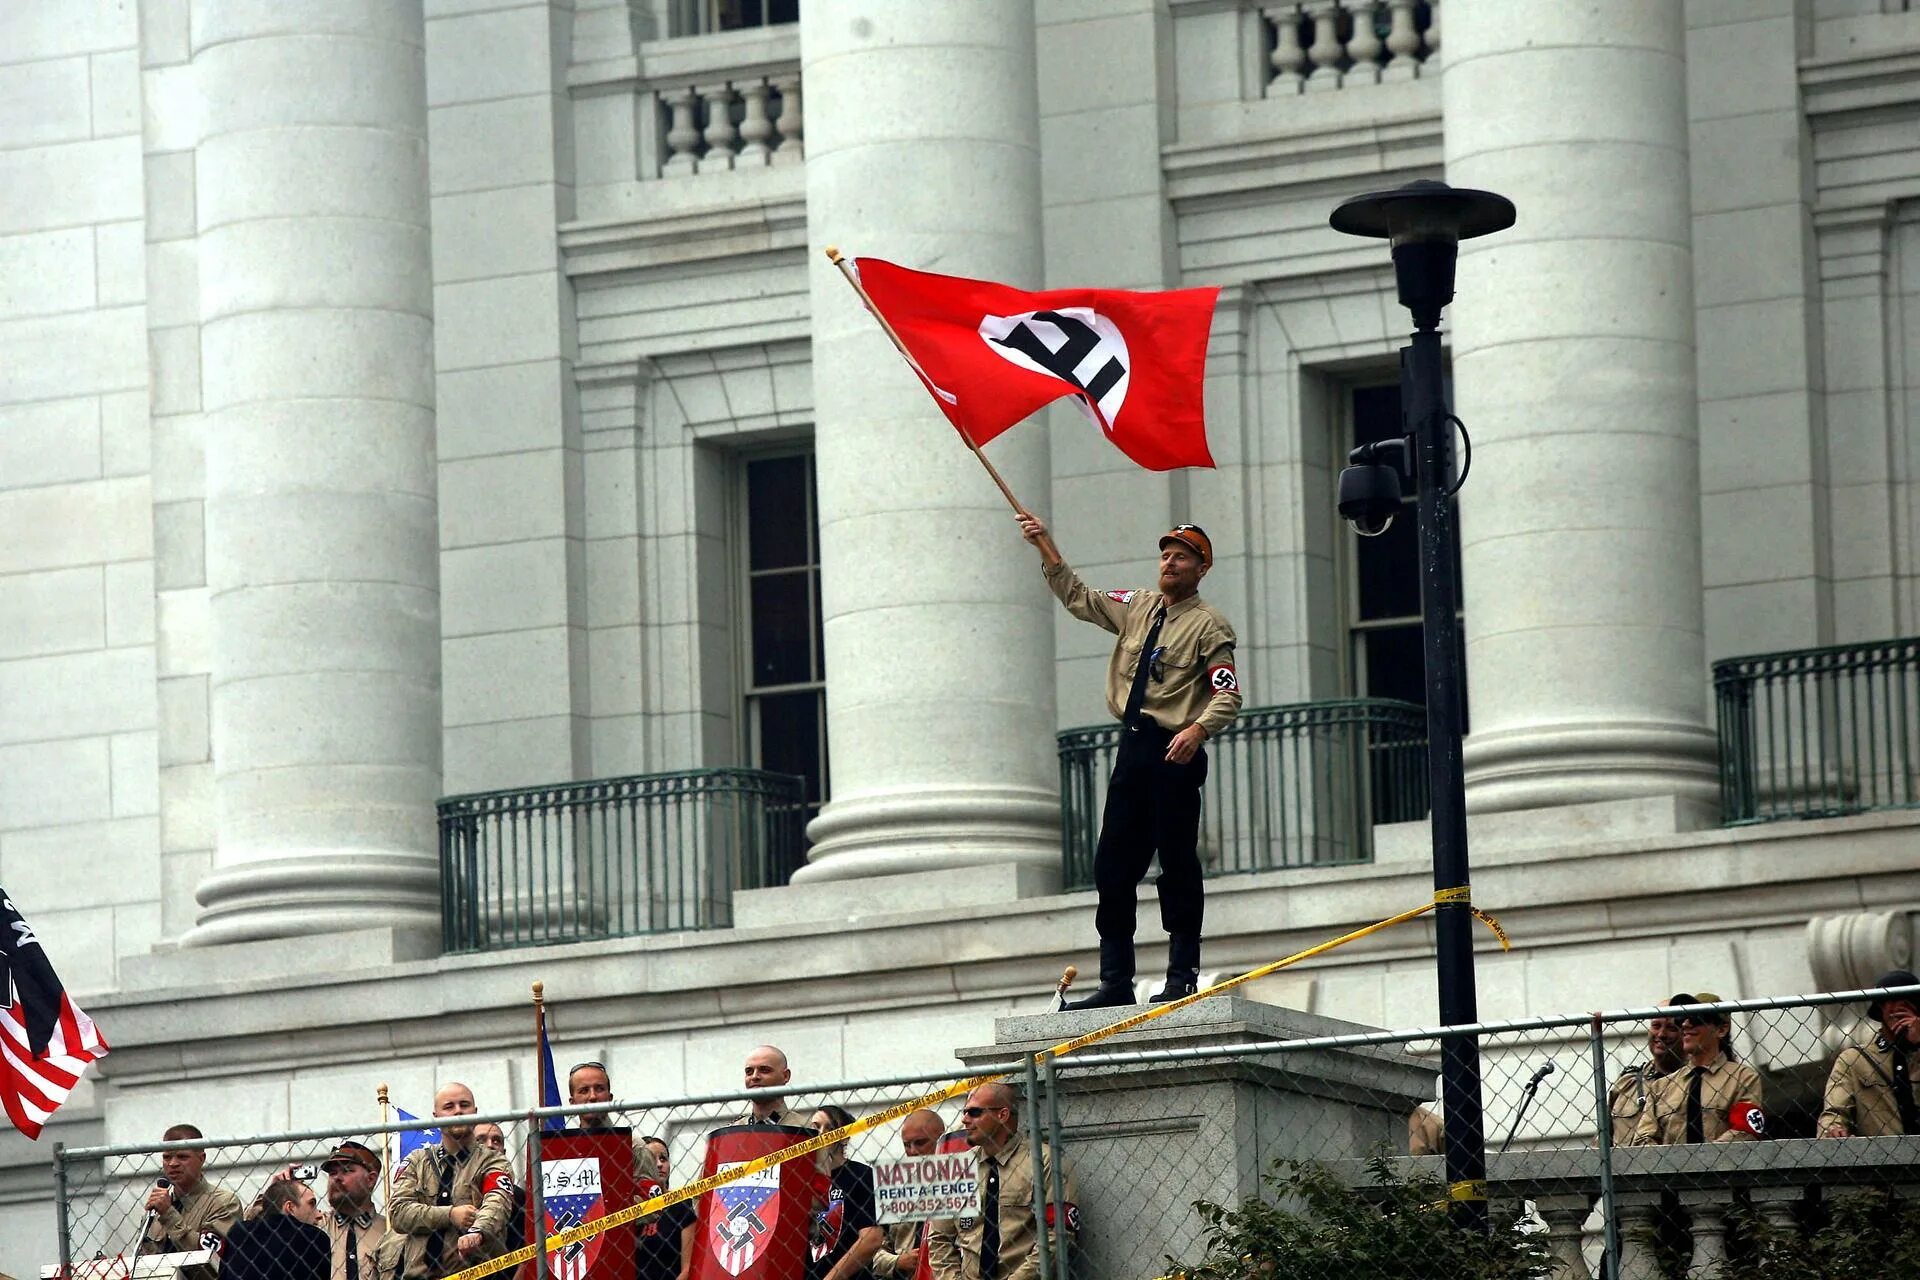 Национал Социалистическая партия США. Нацистская партия США флаг. Фашистская партия США. Националь Социалистическая партия США. Фашистская америка